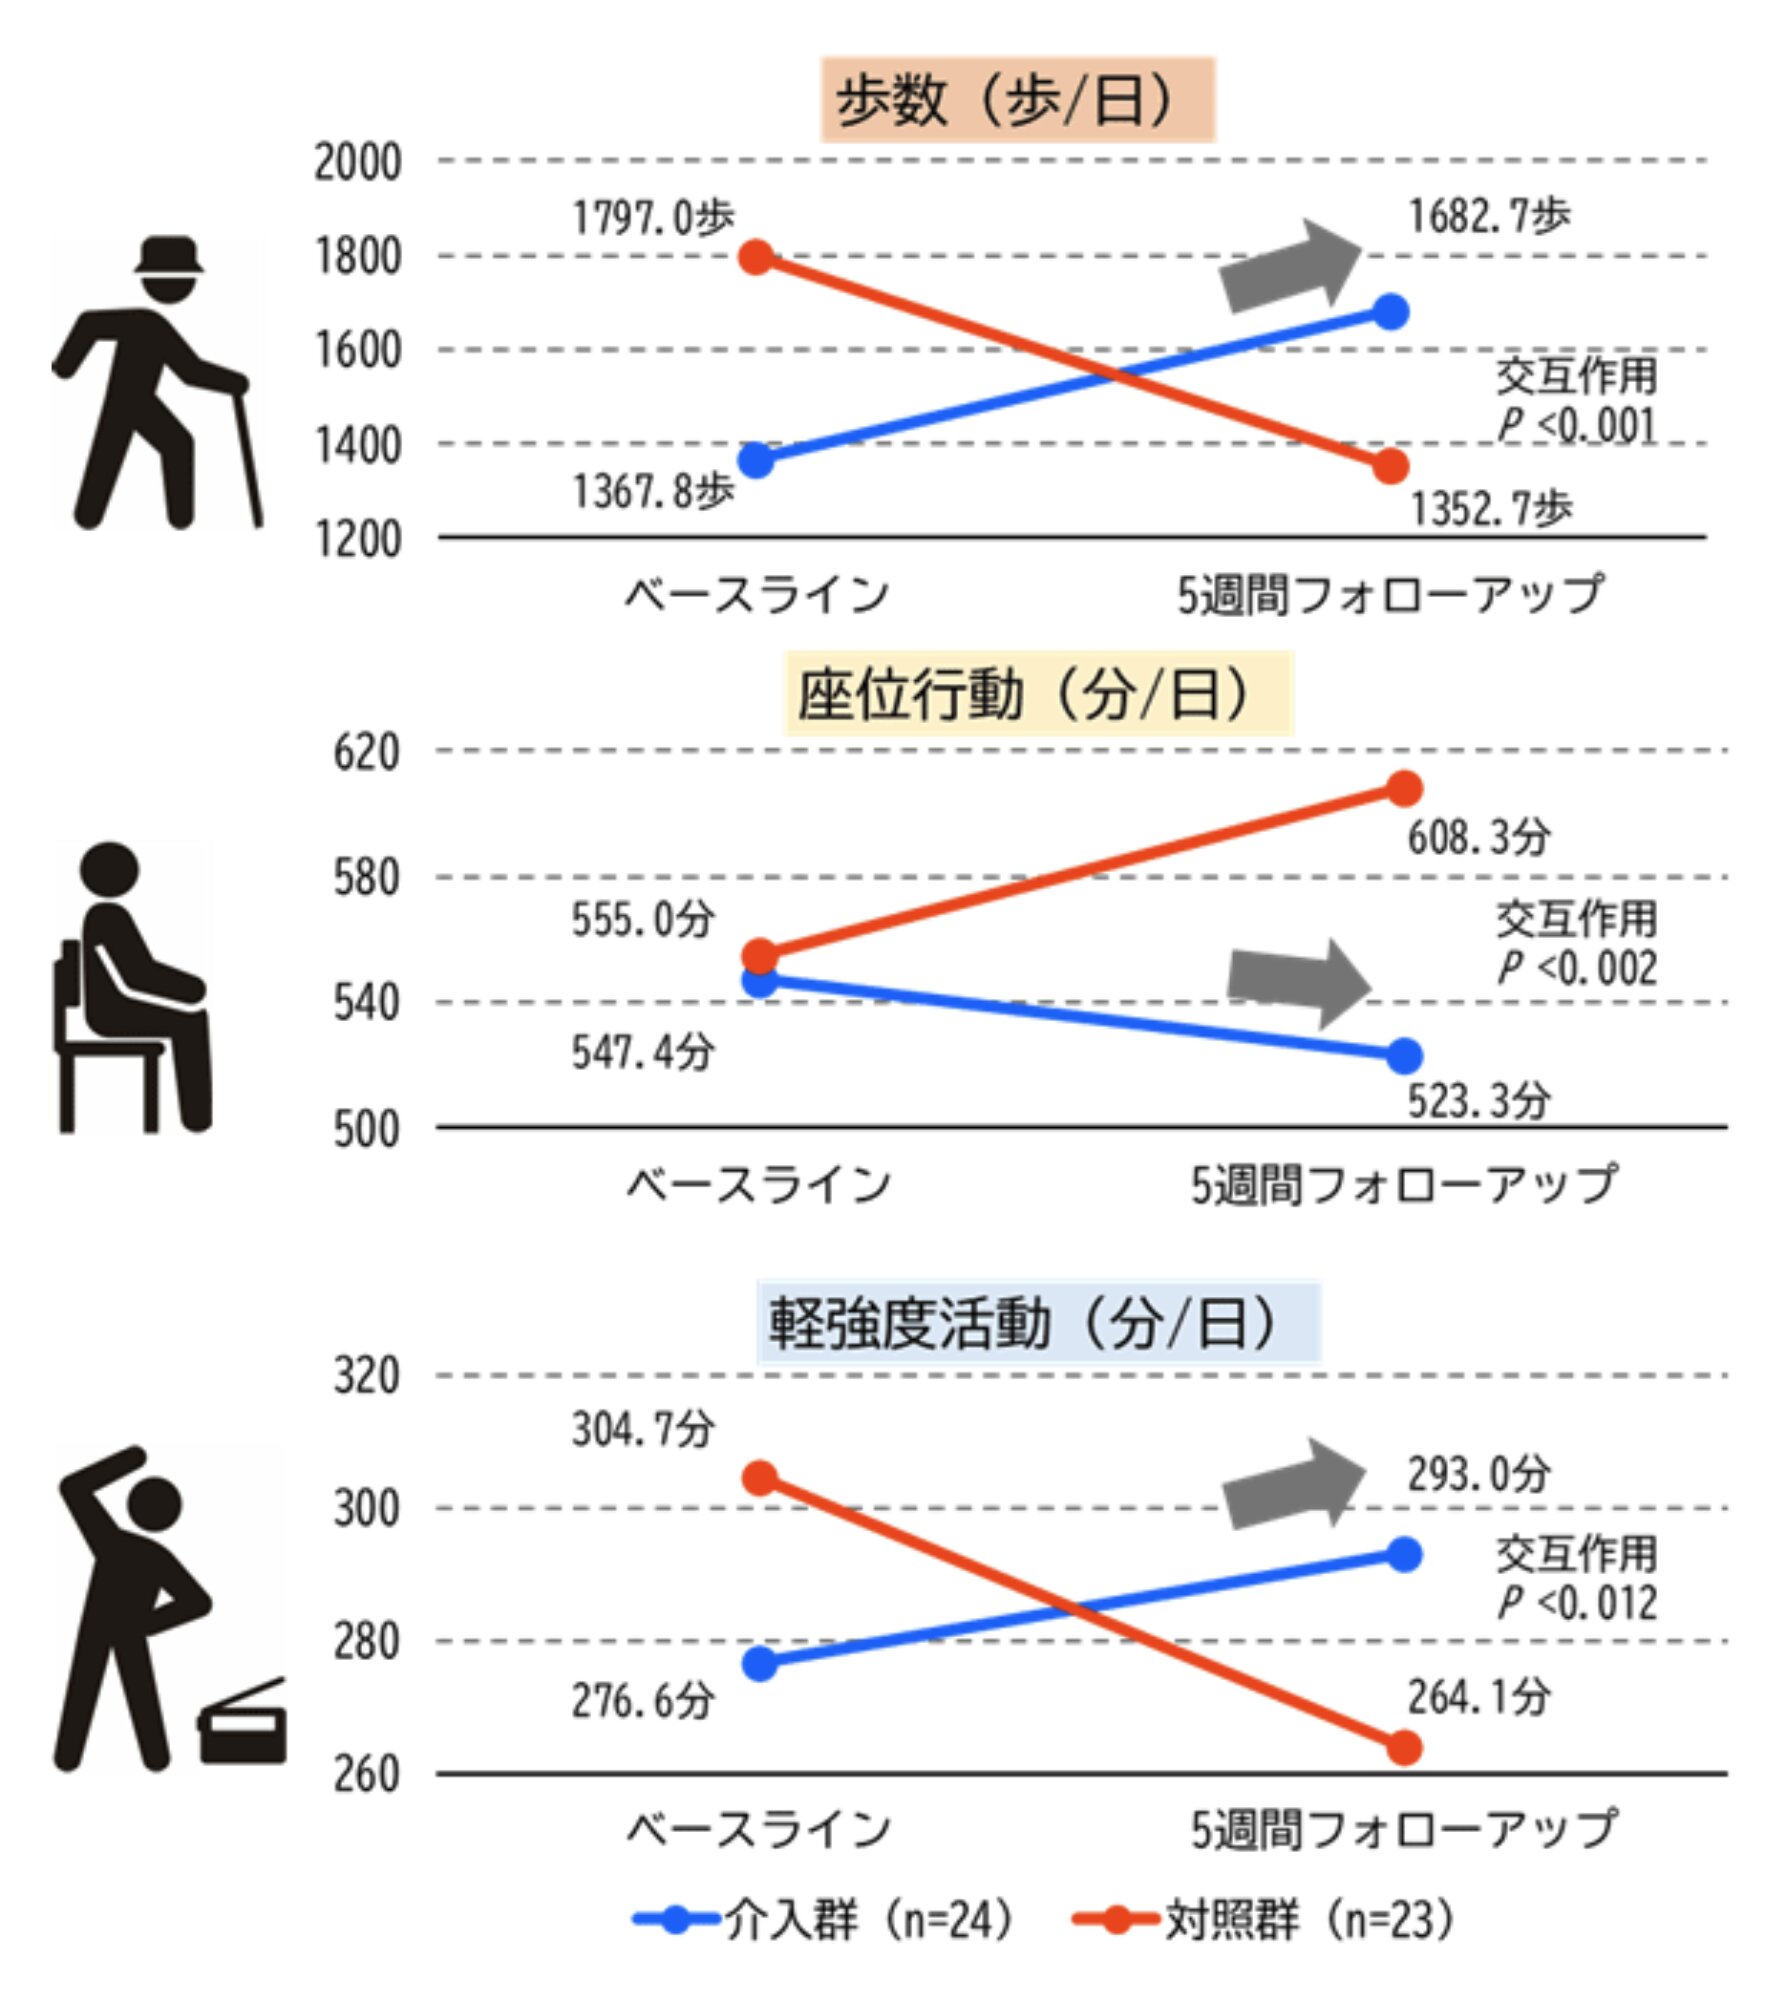 セルフモニタリング介入の効果。記録をつけず、フィードバックを得られないと身体活動量が減り、座りっぱなしが増えることがわかる。神戸大学のリリースより。